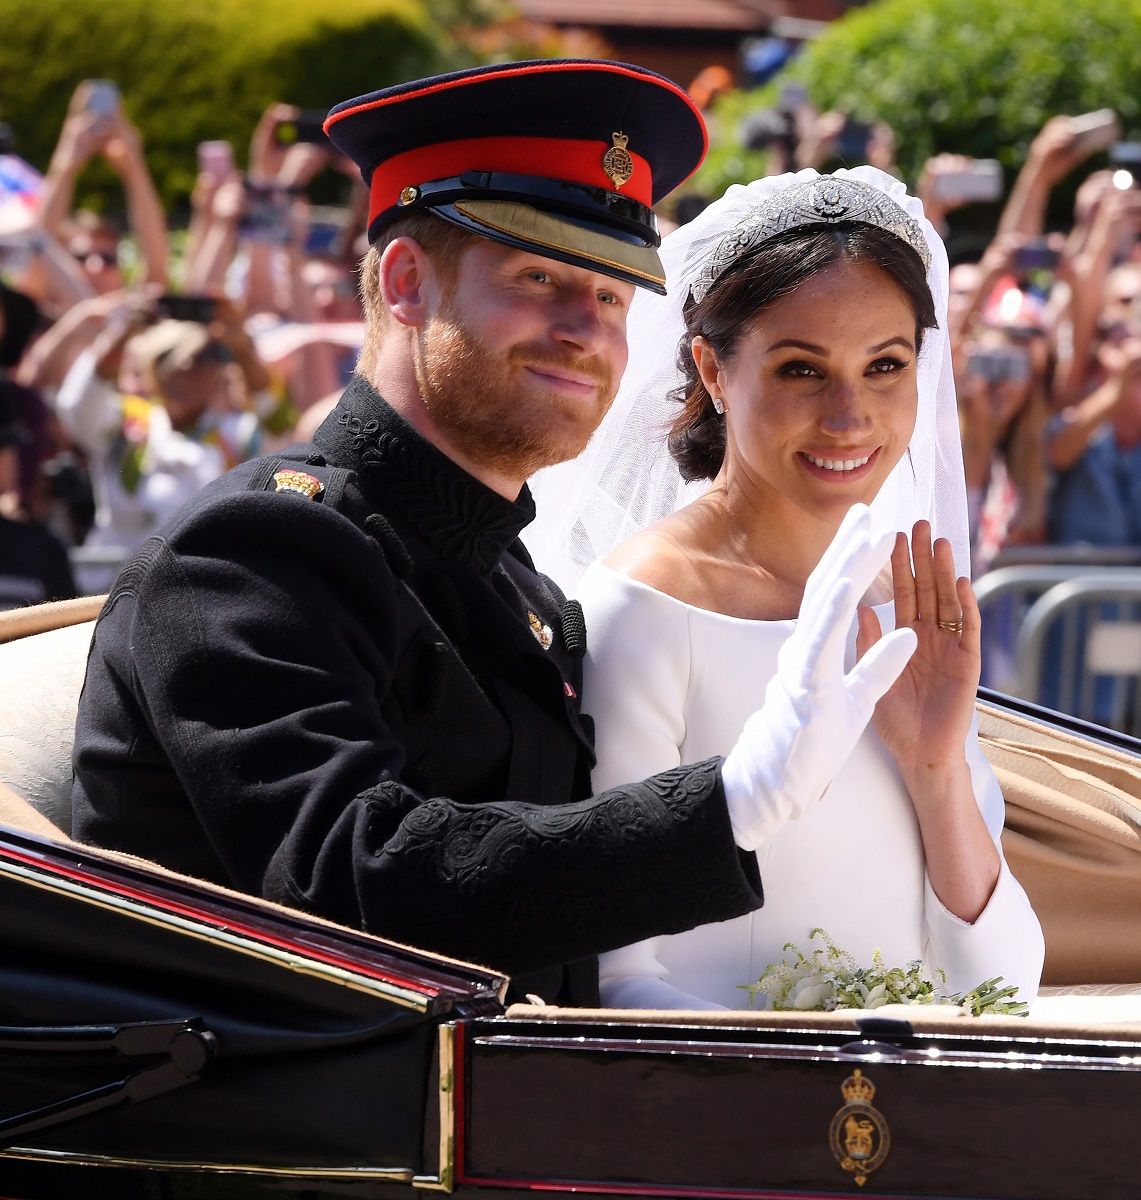 Prințul Harry și Meghan Markle la nunta lor, în trăsura neagră. Ea poartă o rochie de mireasă și văl, el poartă uniforma neagră, cu accente roșii. Fundal cu mulțime